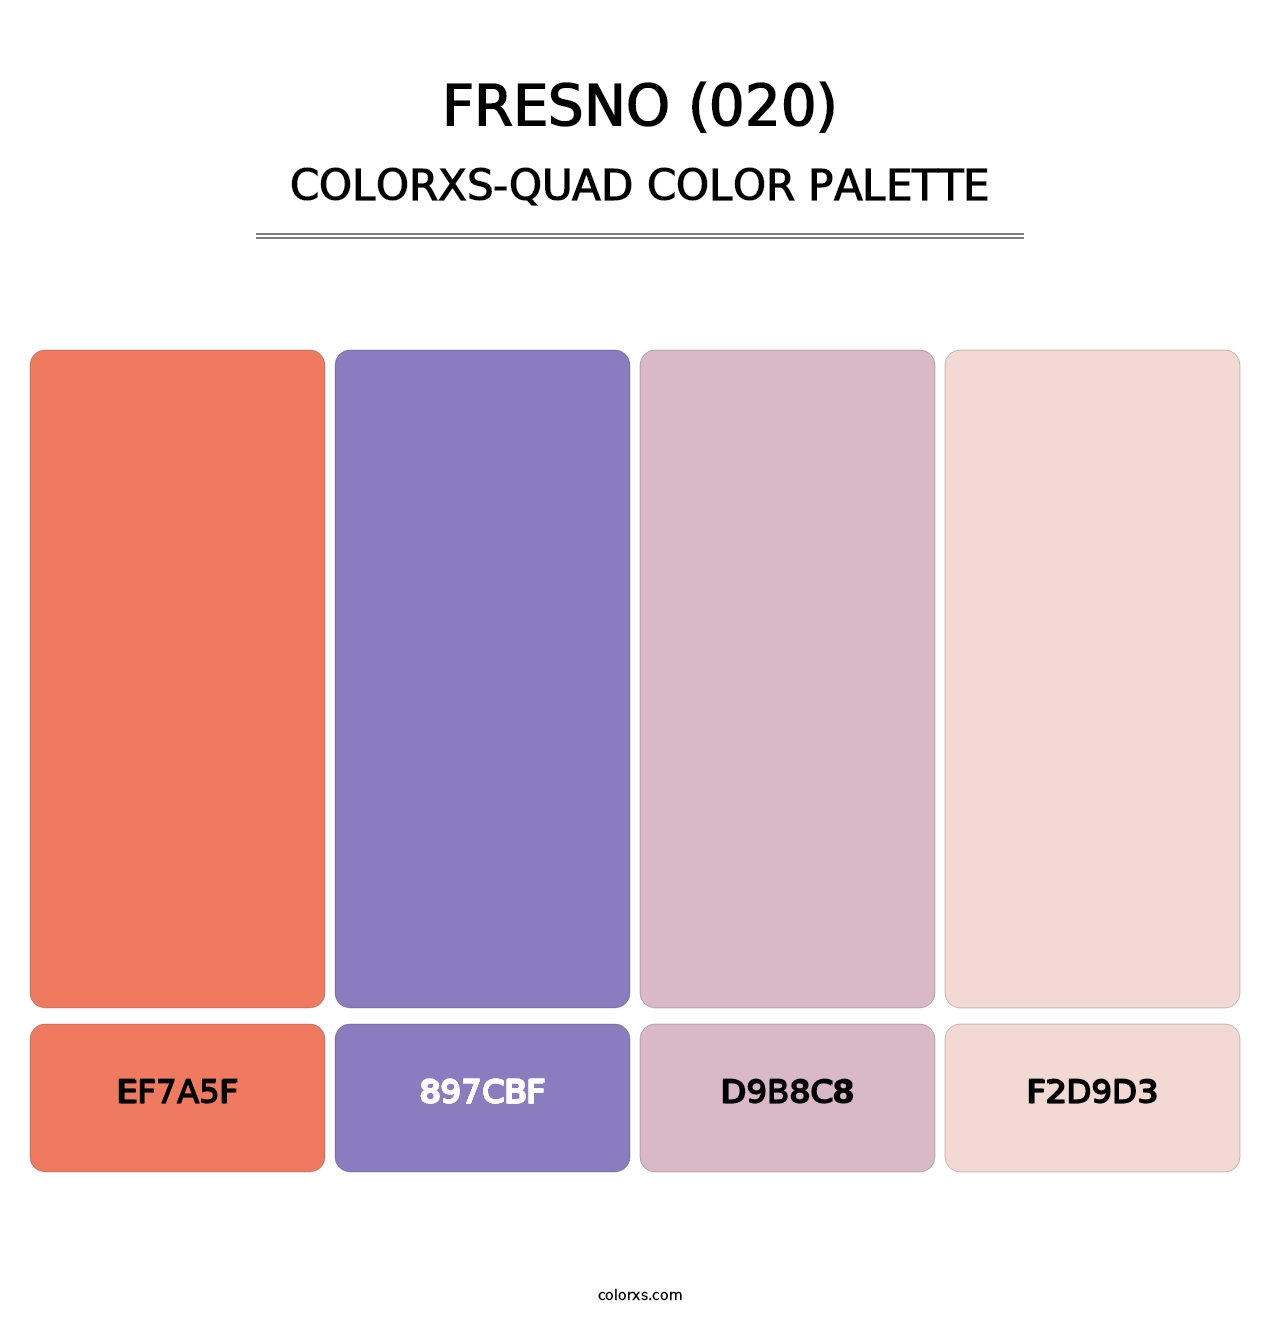 Fresno (020) - Colorxs Quad Palette